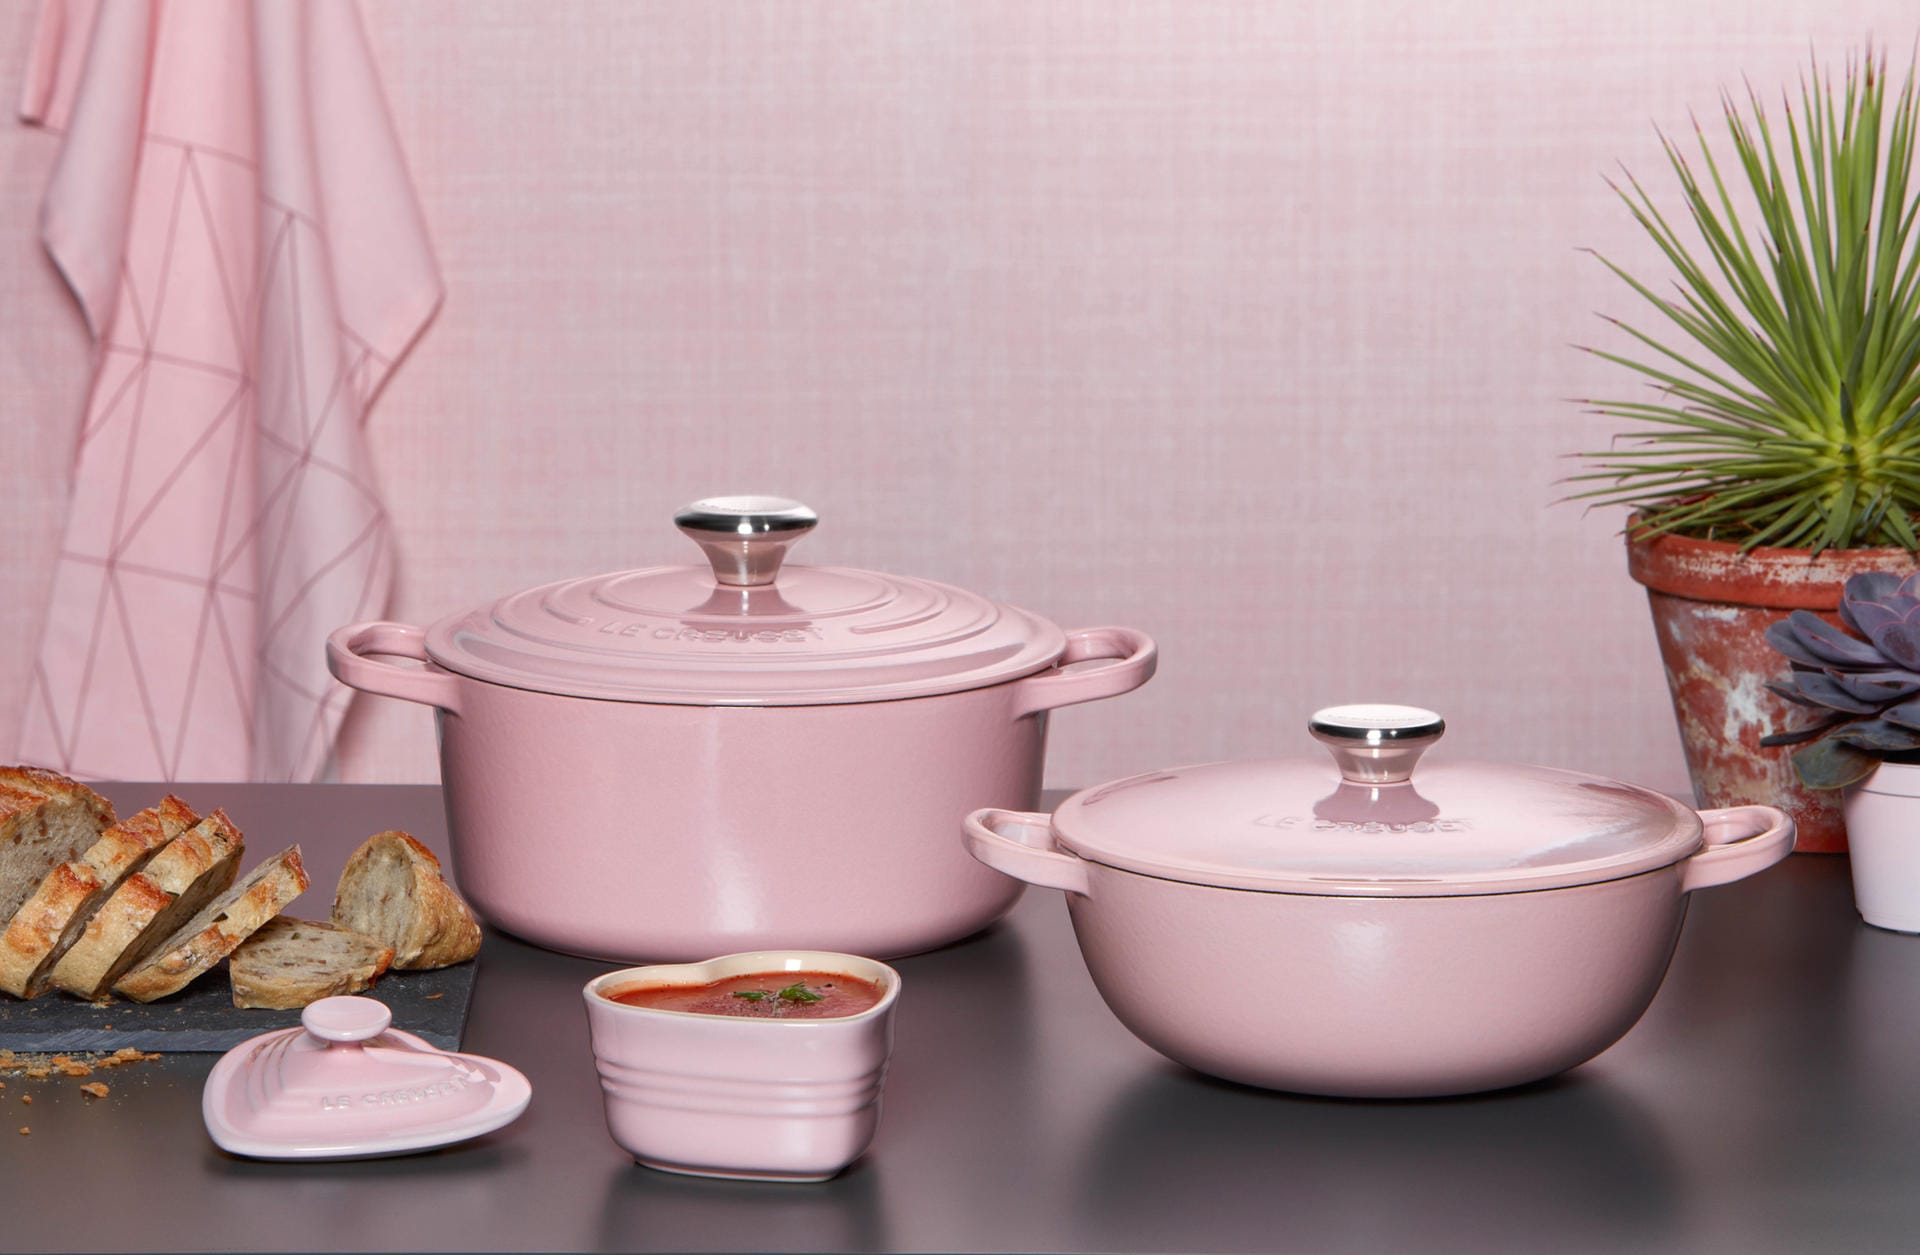 Le Creuset bringt nun einige ihrer Töpfe und Kochutensilien im Ton Chiffon Pink heraus.